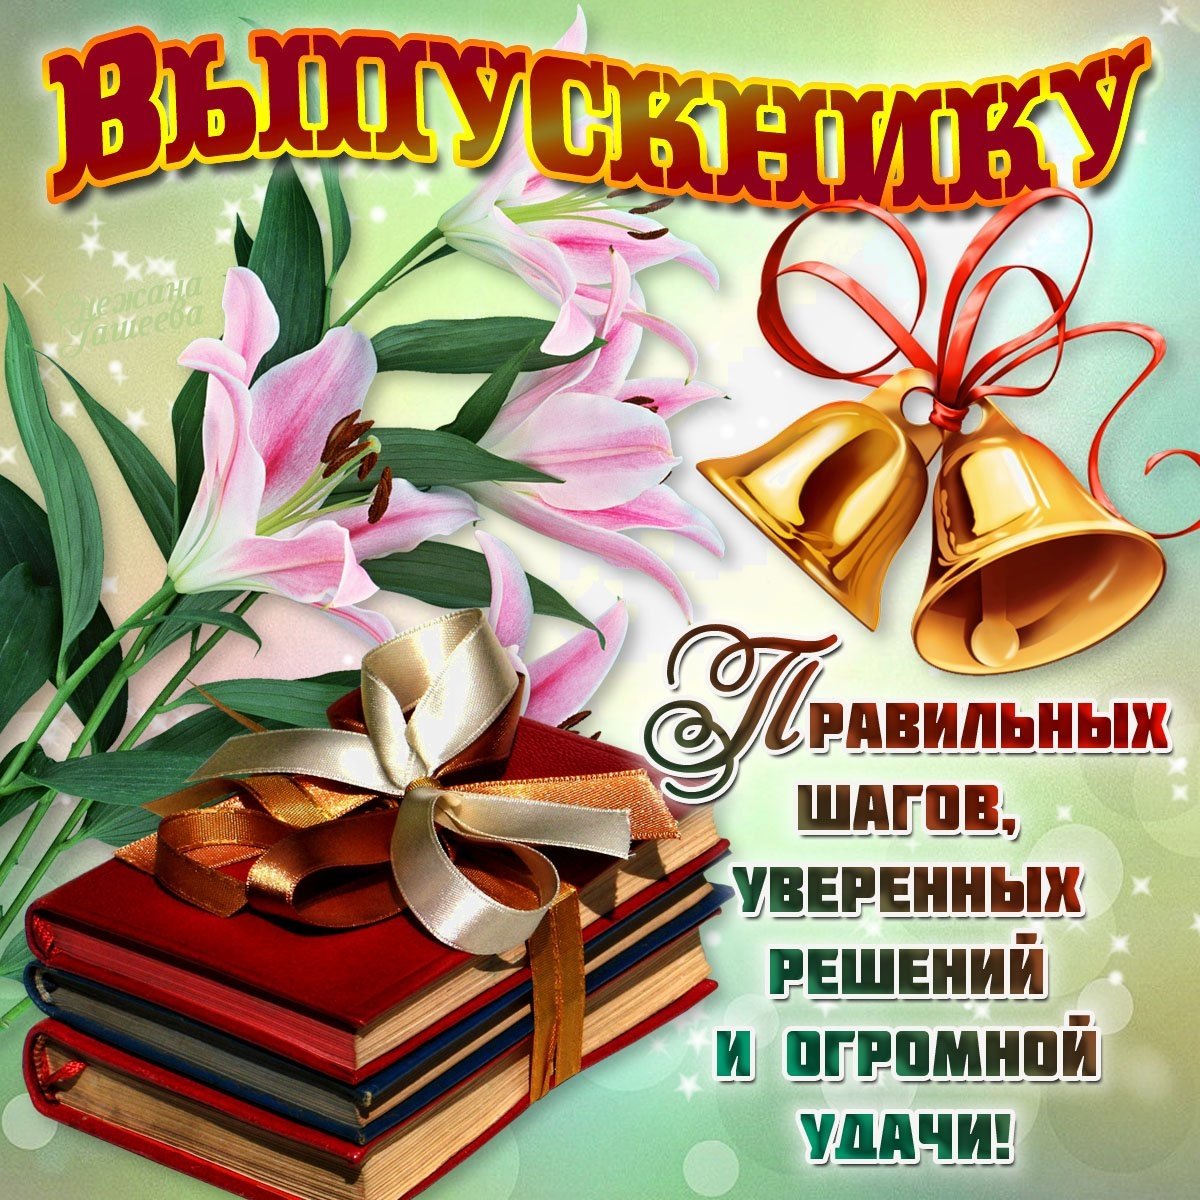 Ответы webmaster-korolev.ru: Помогите, пожалуйста, найти стихи выпускникам музыкальной школы